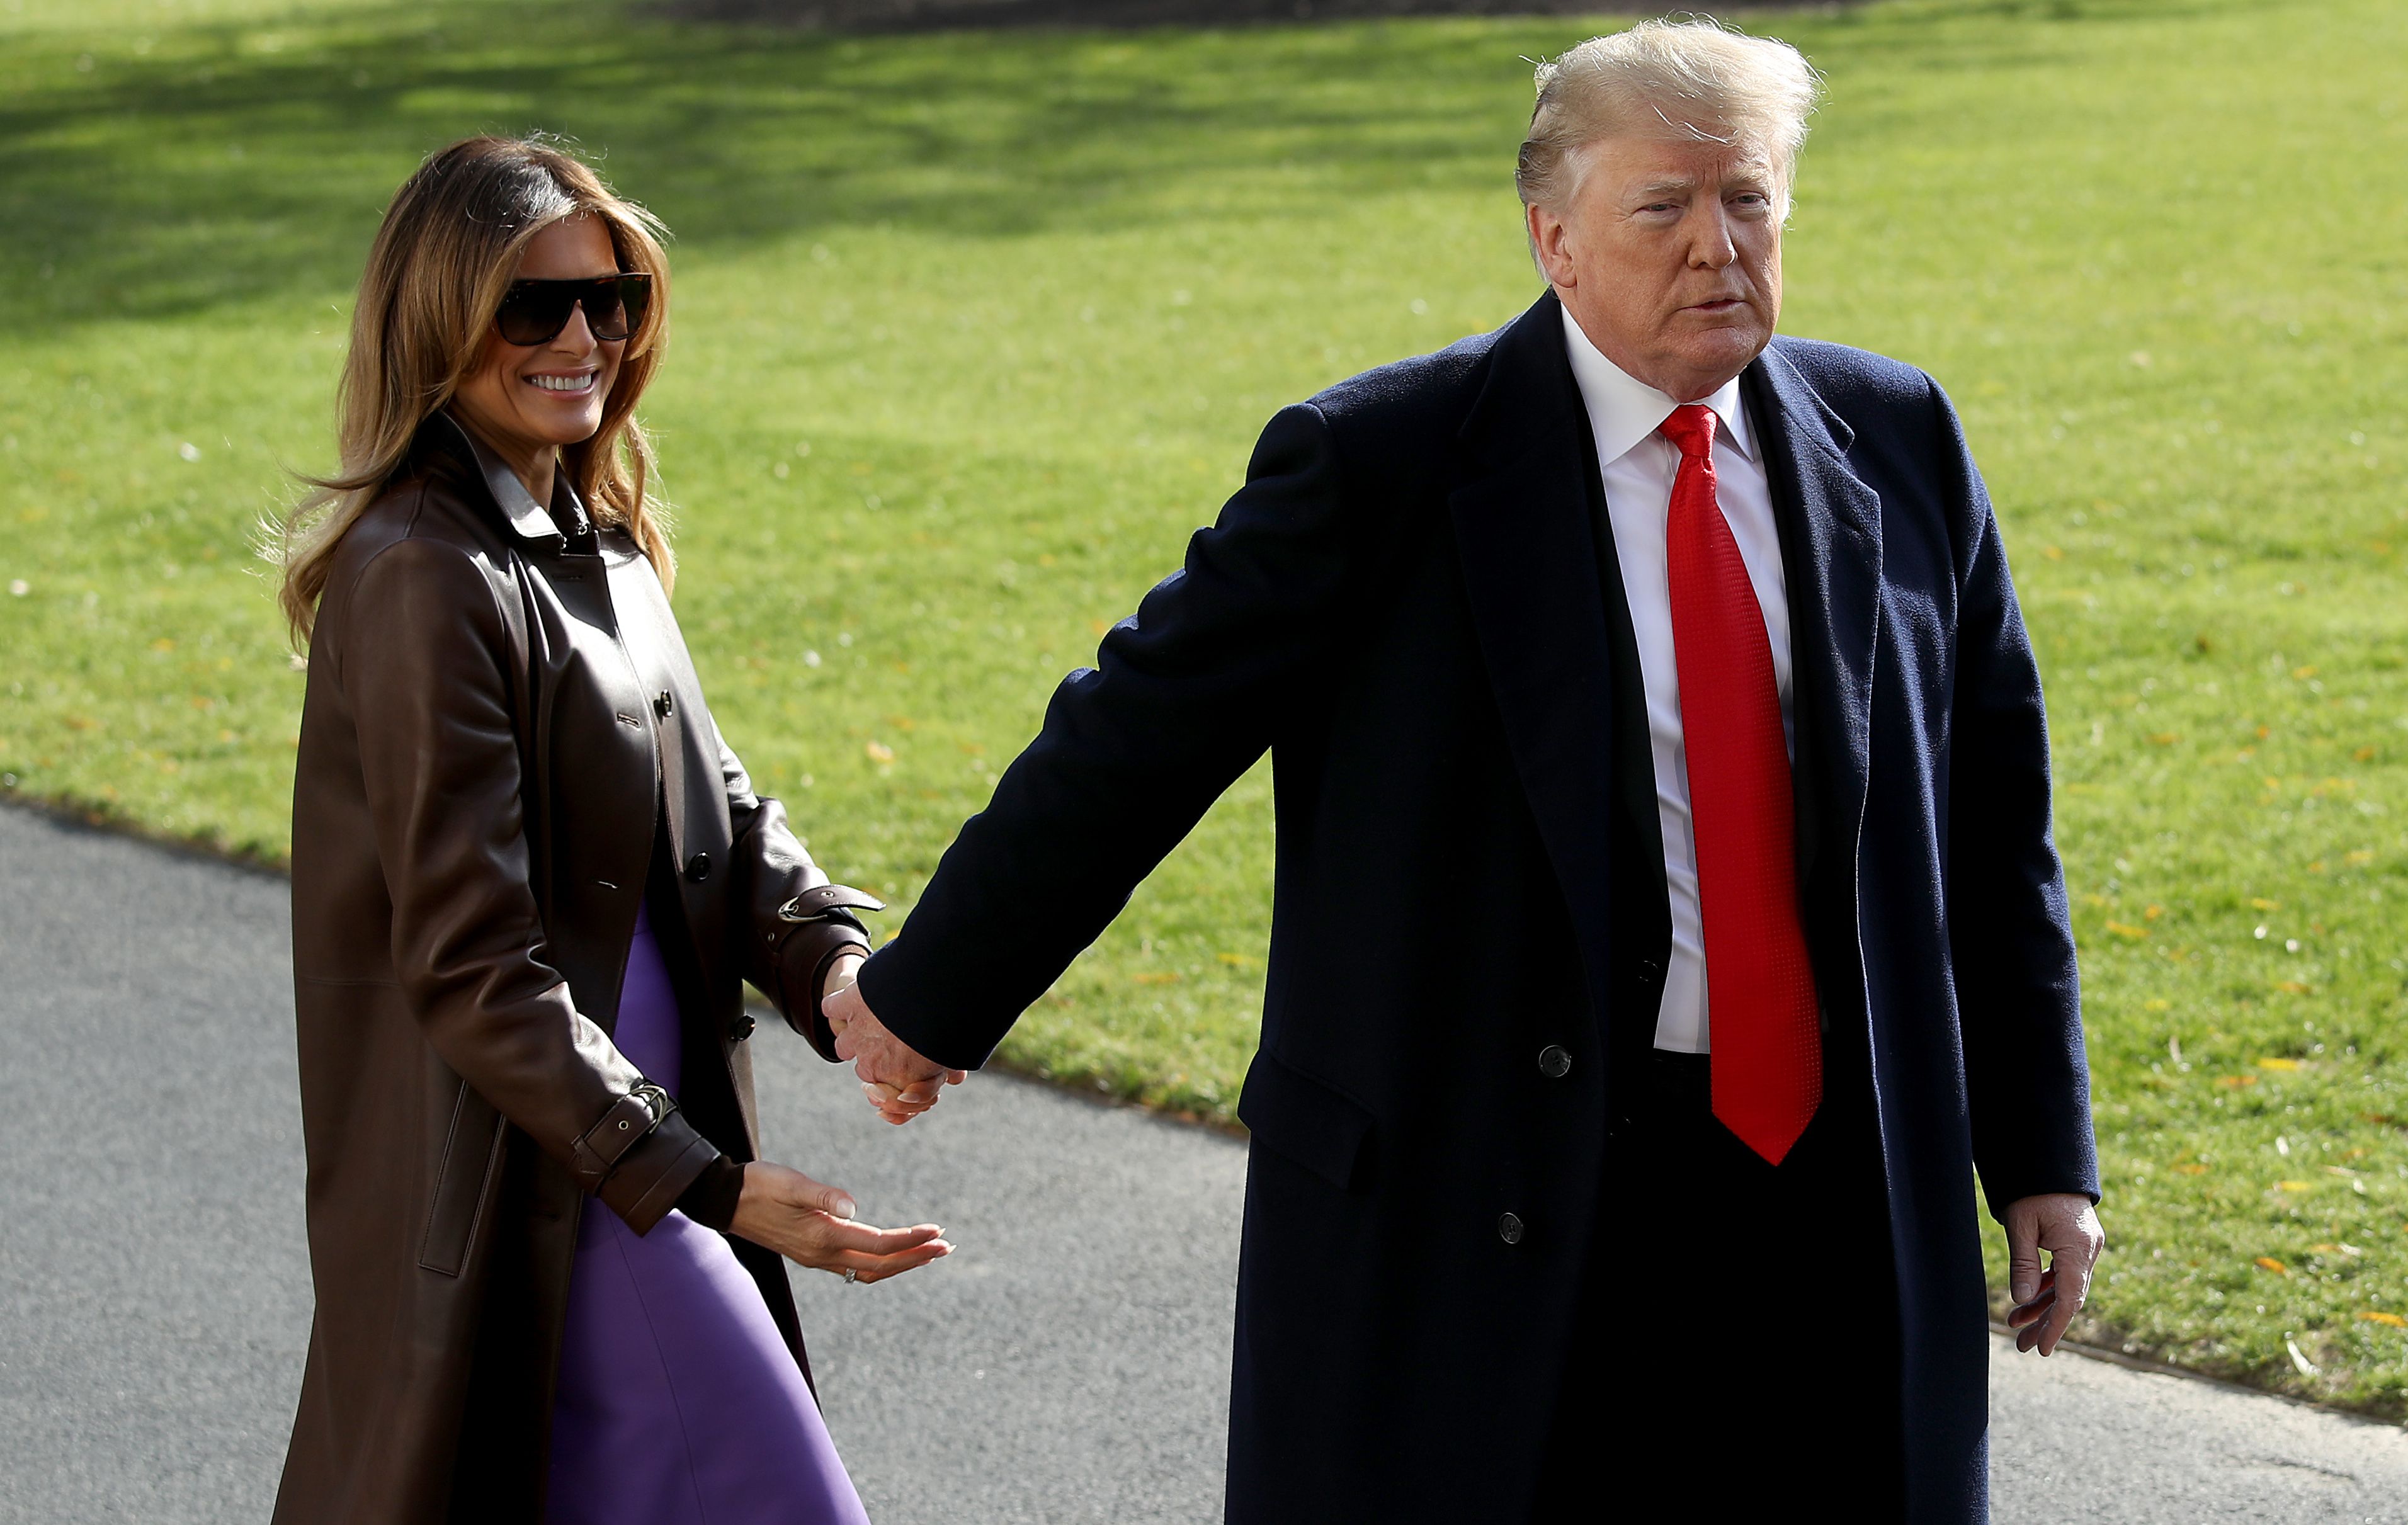 Donald Trump y su esposa Melania saliendo de la Casa Blanca, el 29 de noviembre de 2018 en Washington, DC. | Foto: Getty Images